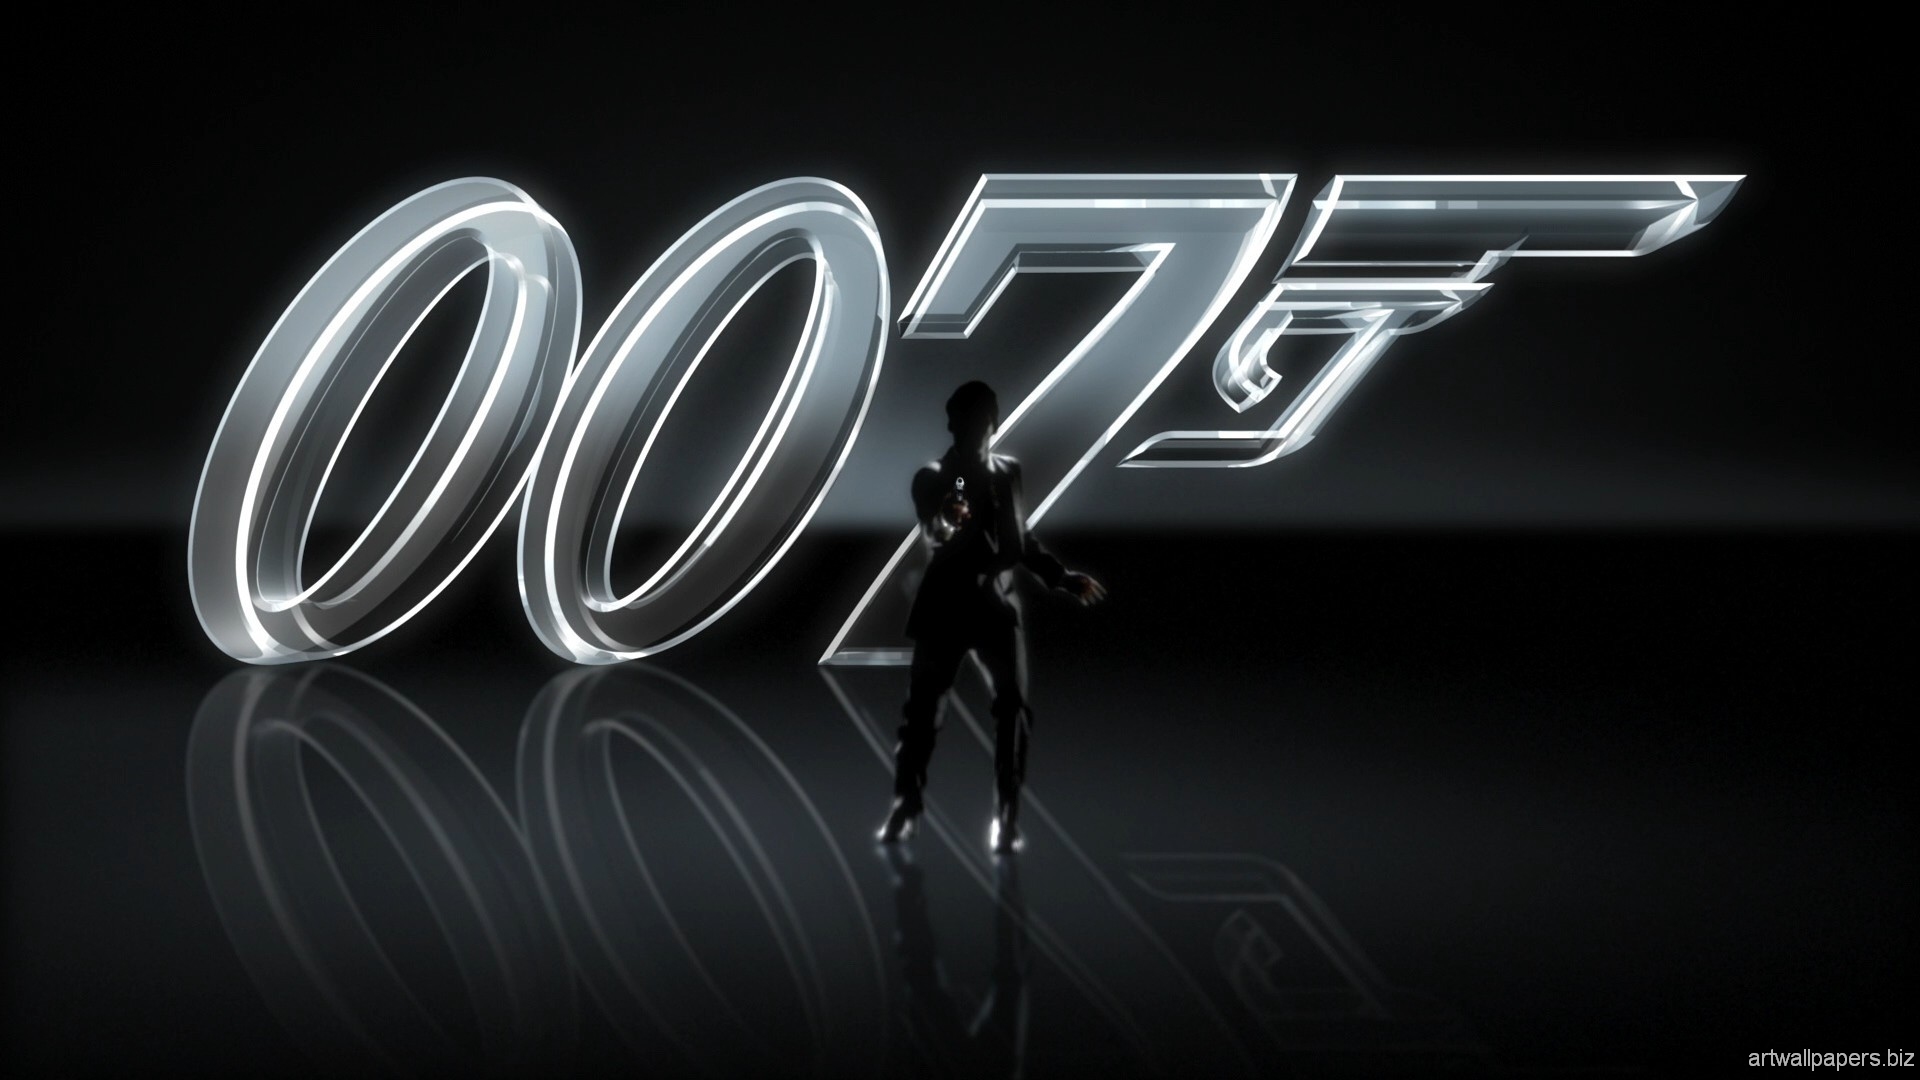 james bond 007 wallpaper,text,font,logo,automotive design,graphic design